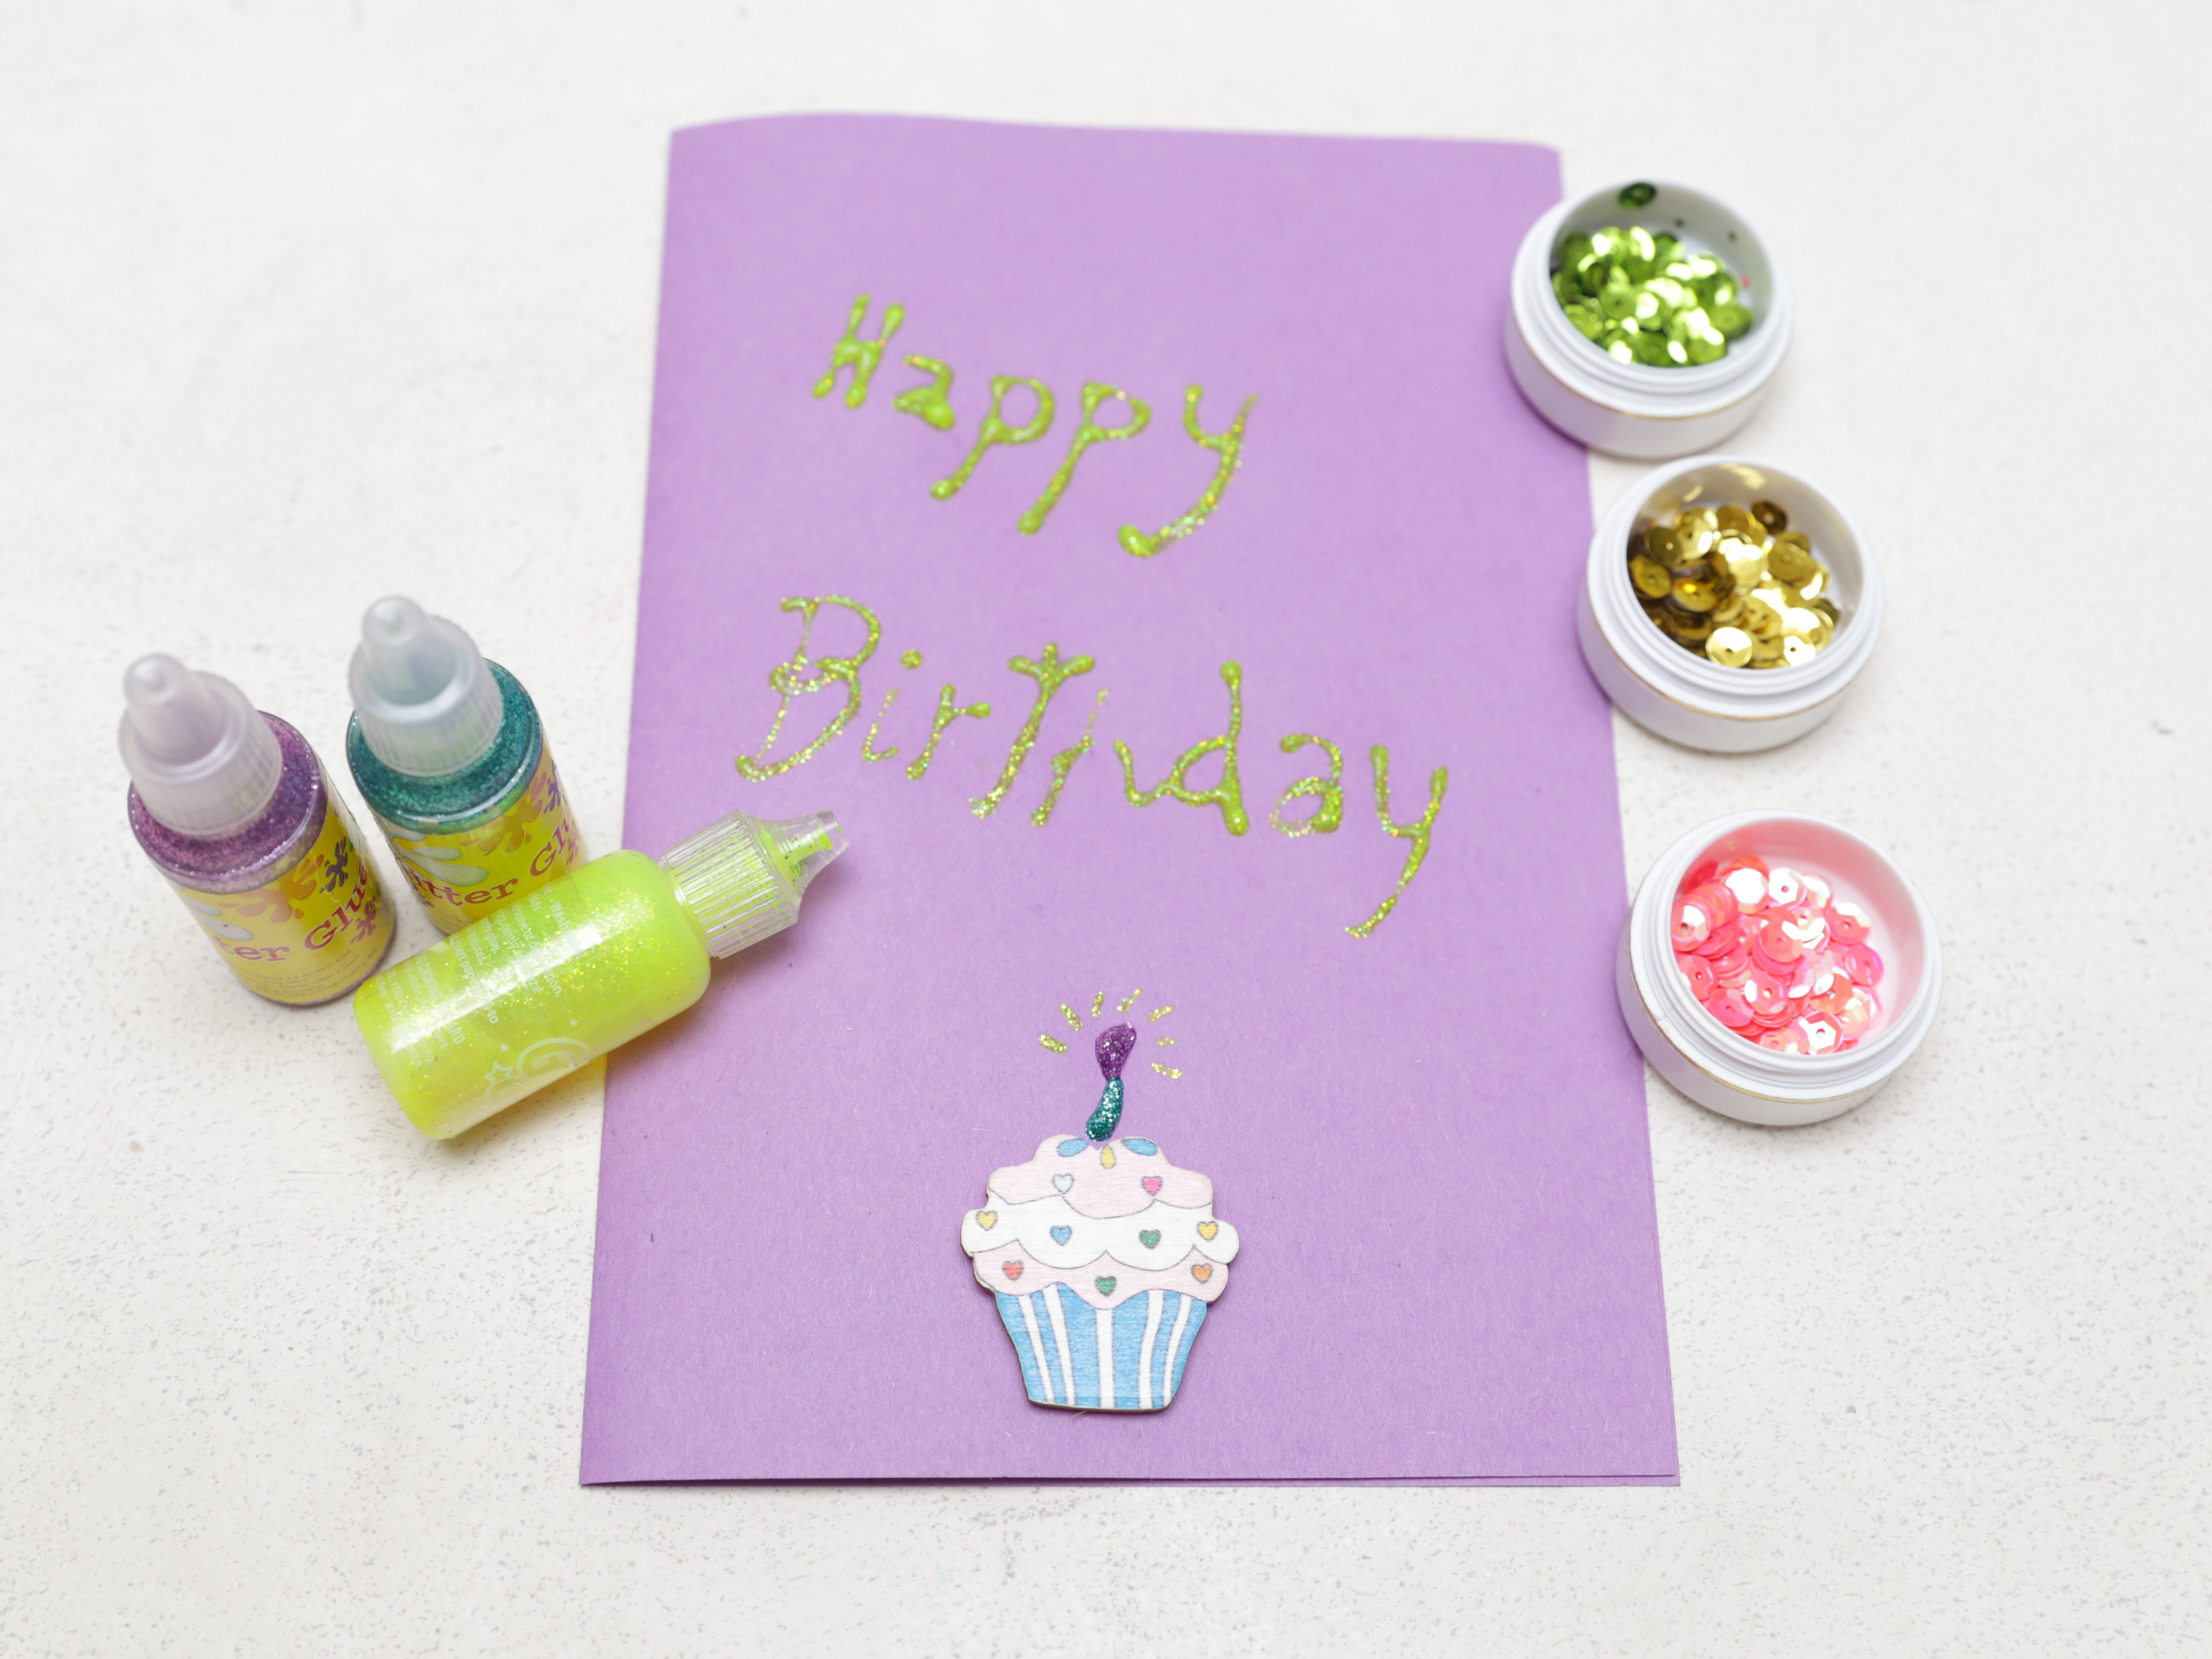 Handmade Birthday Card Ideas For Husband How To Make A Simple Handmade Birthday Card 15 Steps